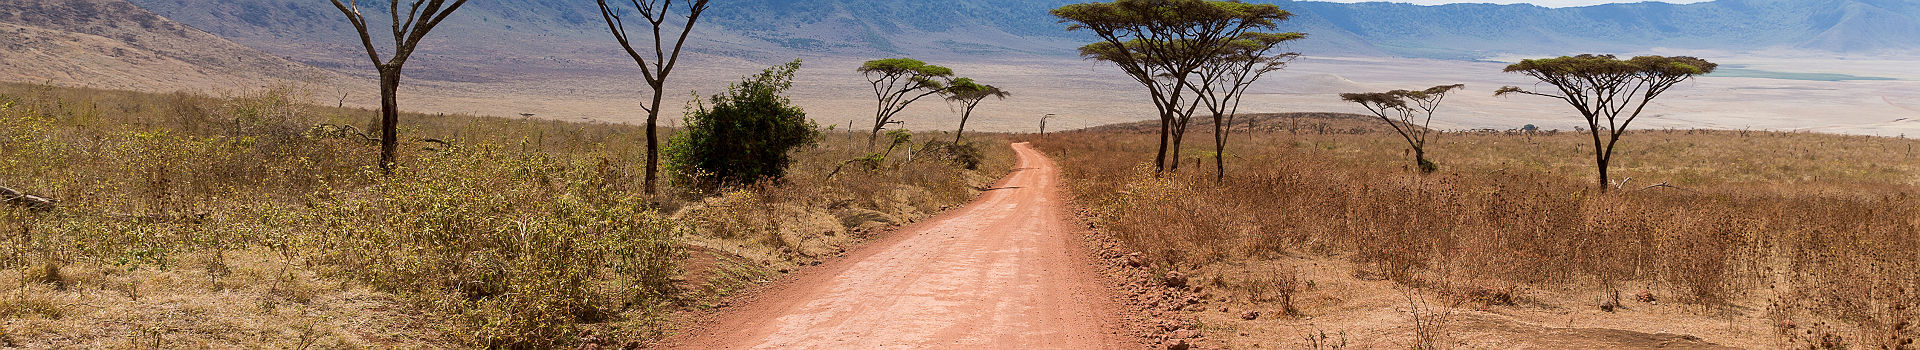 Afrique - Sur la route du safari dans la réserve naturelle de Ngorongoro